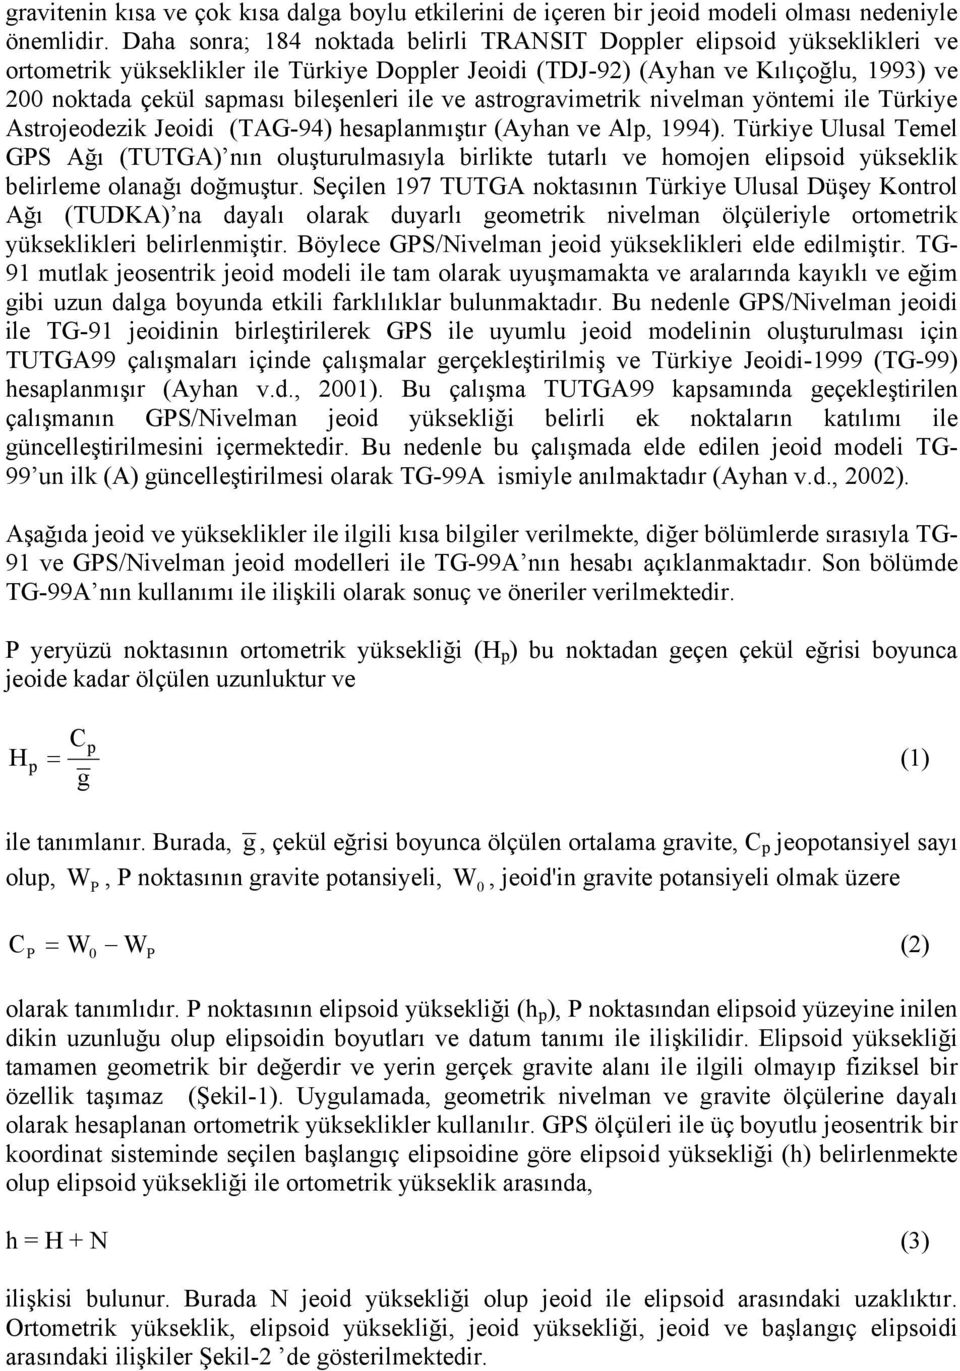 bileşenleri ile ve astrogravimetrik nivelman yöntemi ile Türkiye Astrojeodezik Jeoidi (TAG-94) hesaplanmıştır (Ayhan ve Alp, 1994).